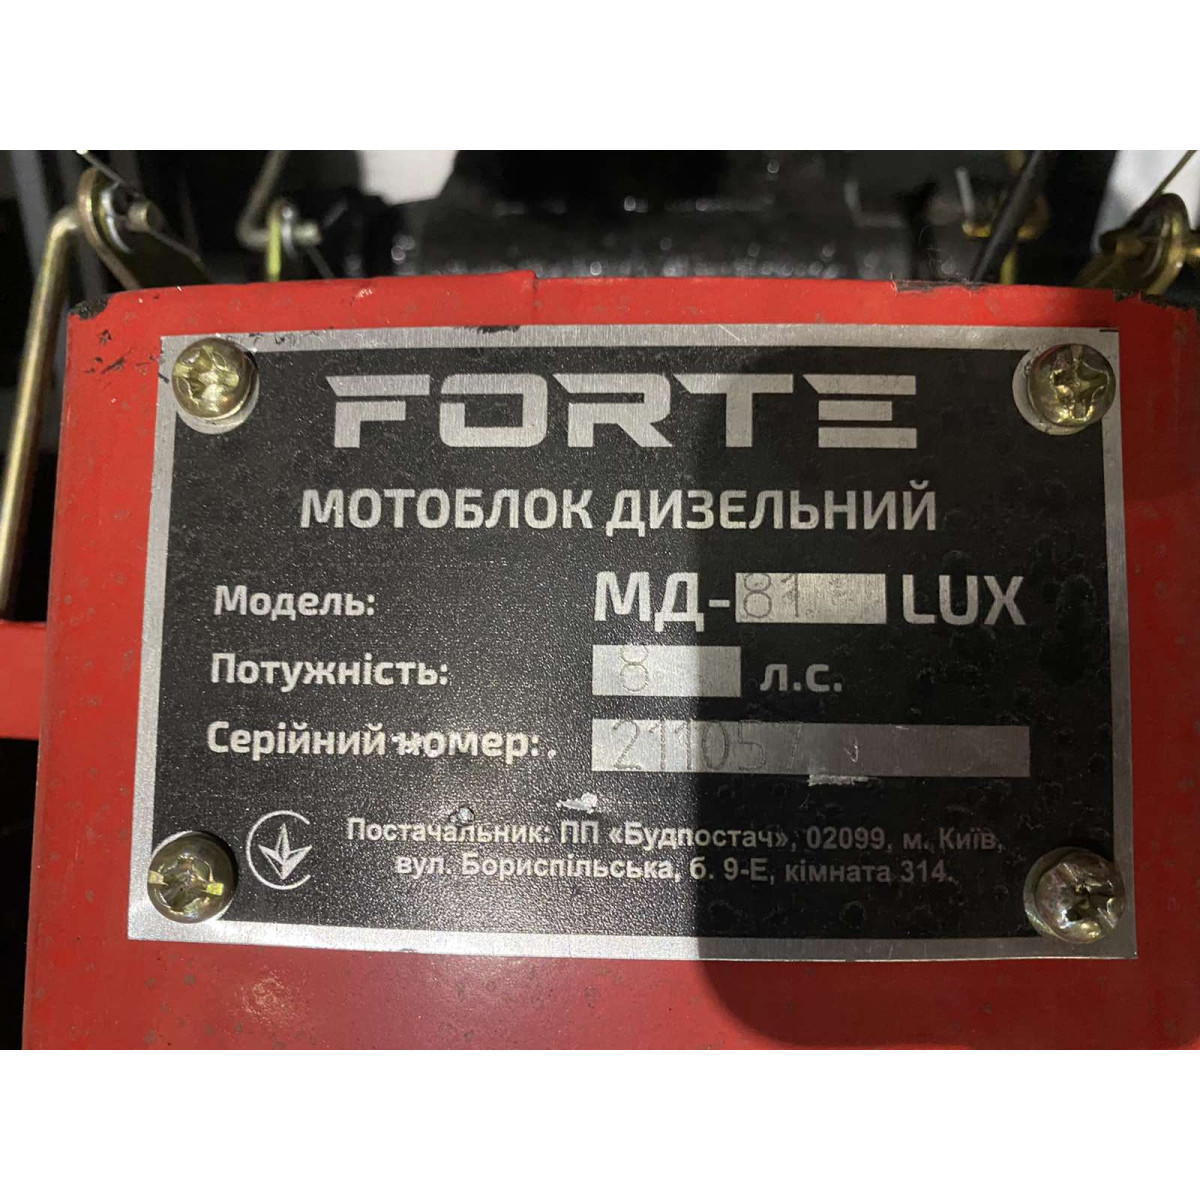 Мотоблок дизельний червоний Forte МД-81 LUX без плуга